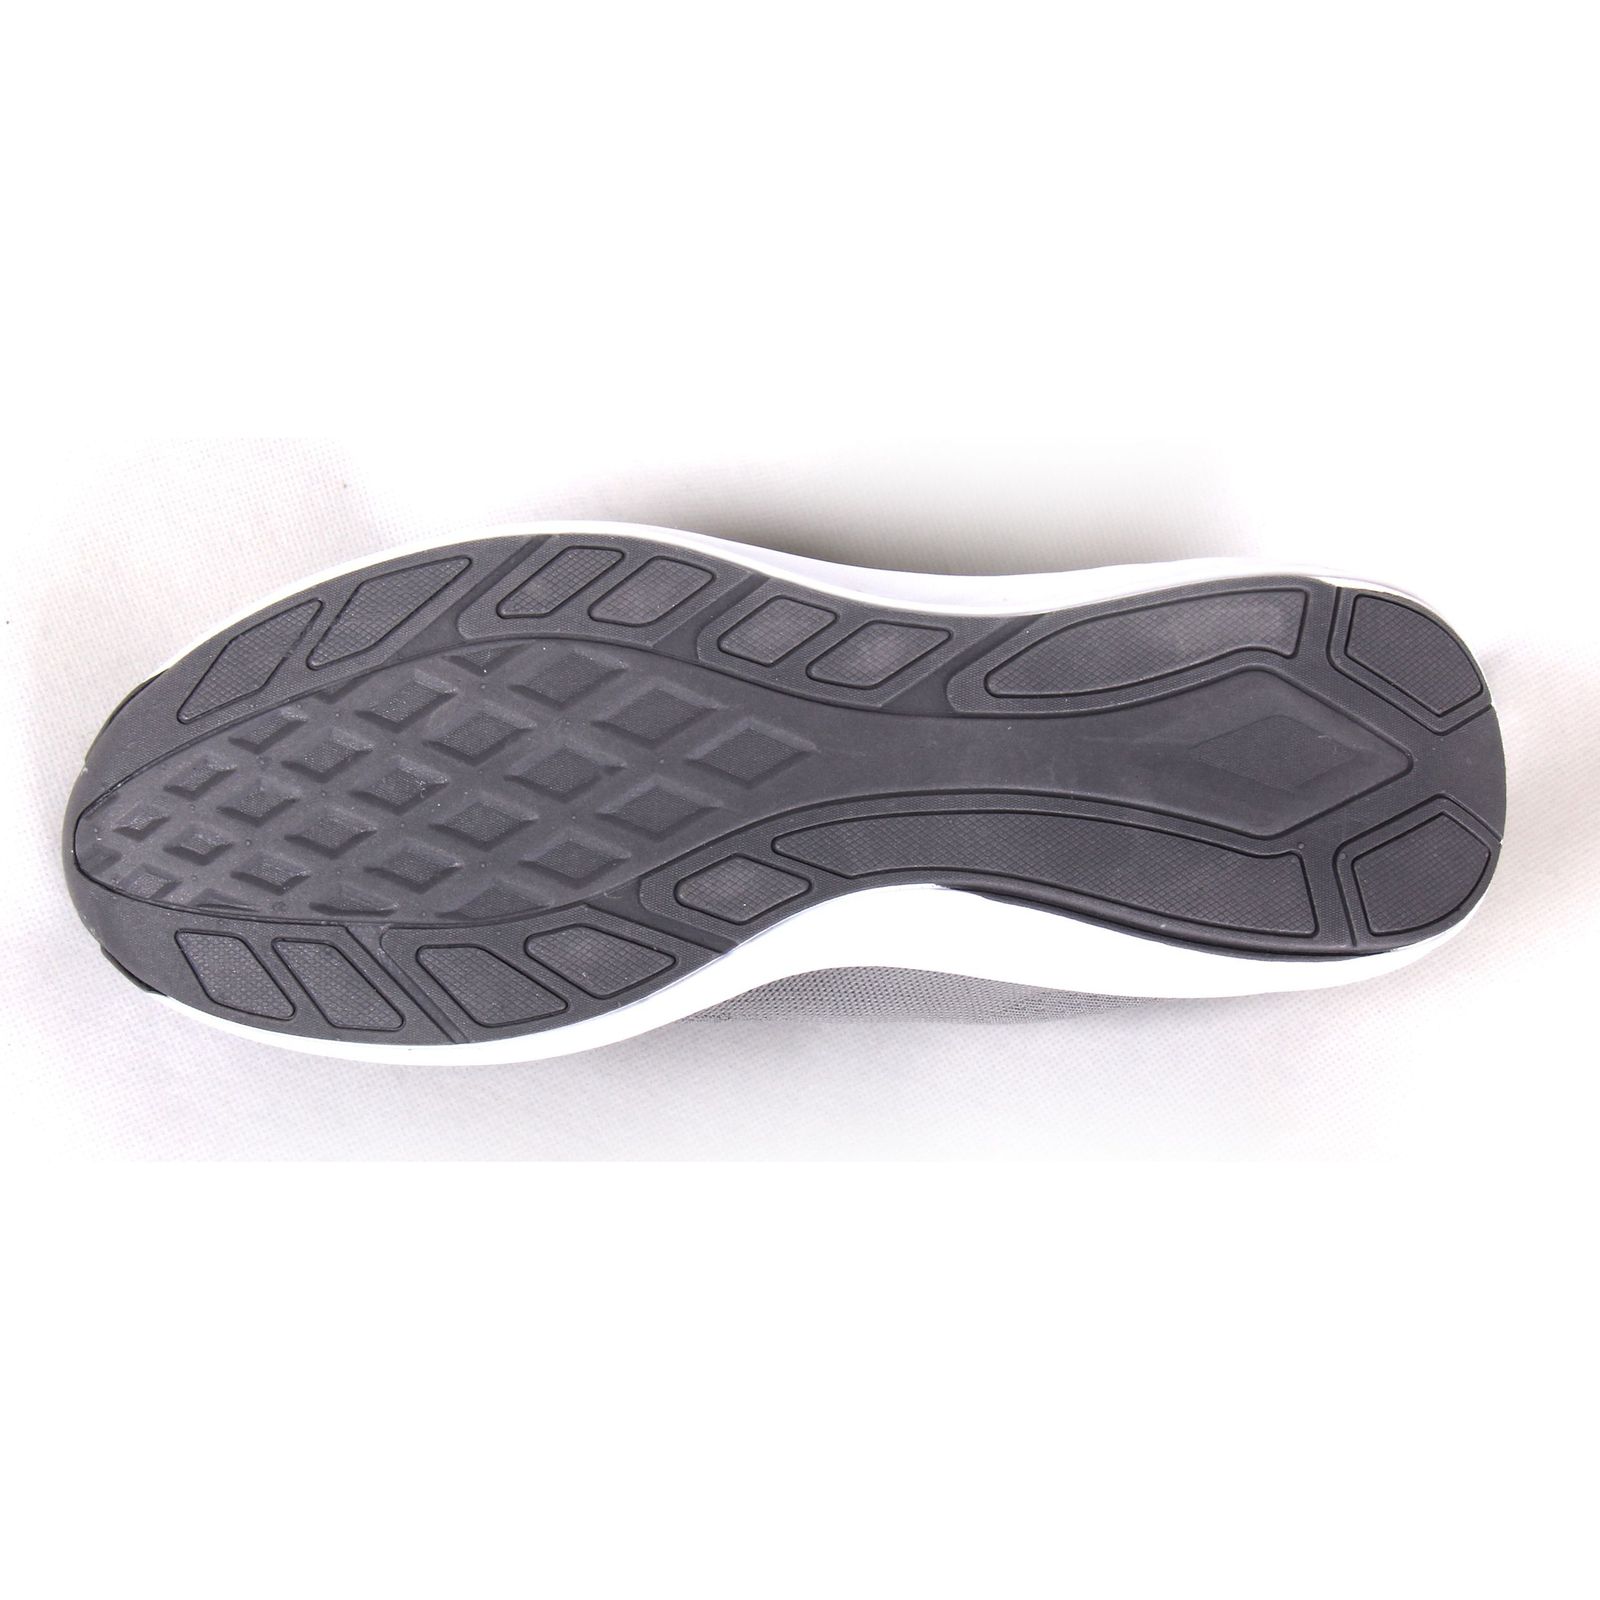 کفش مخصوص پیاده روی مردانهکد 1003